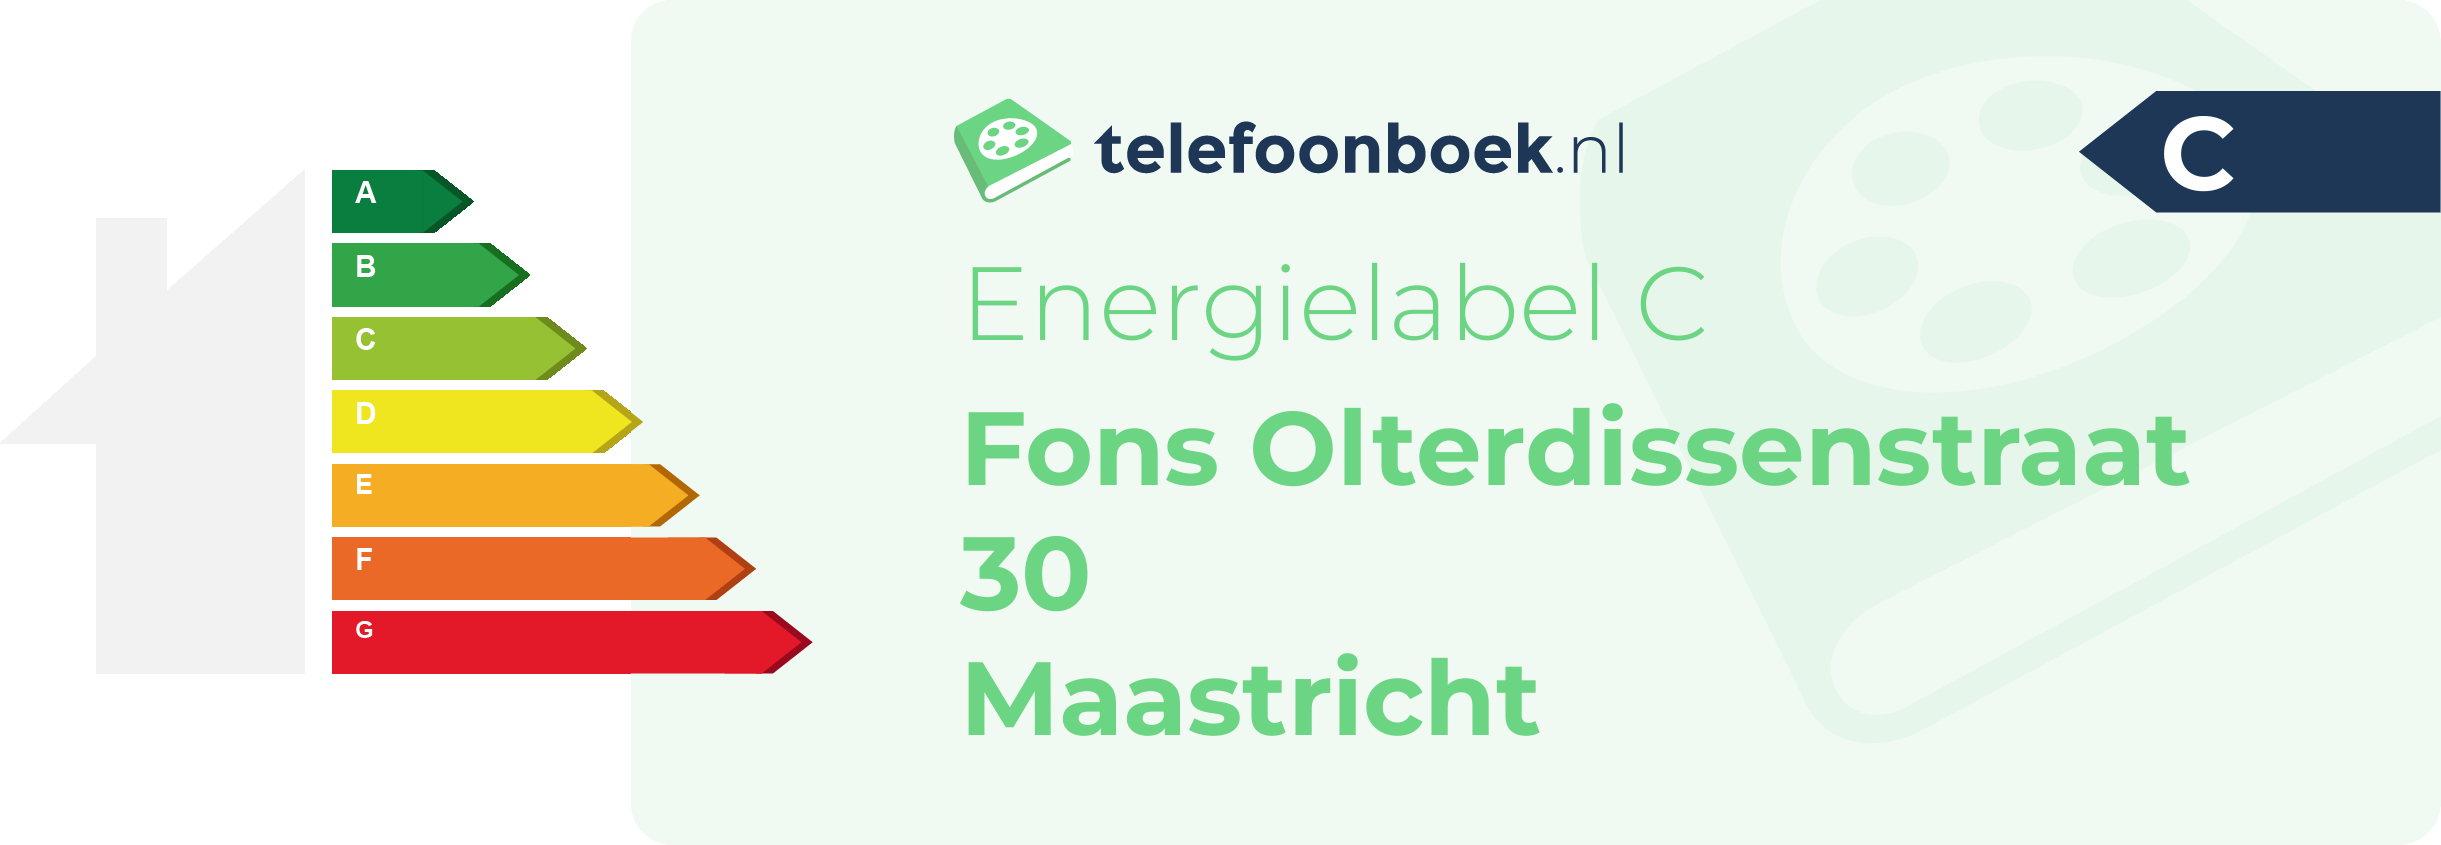 Energielabel Fons Olterdissenstraat 30 Maastricht